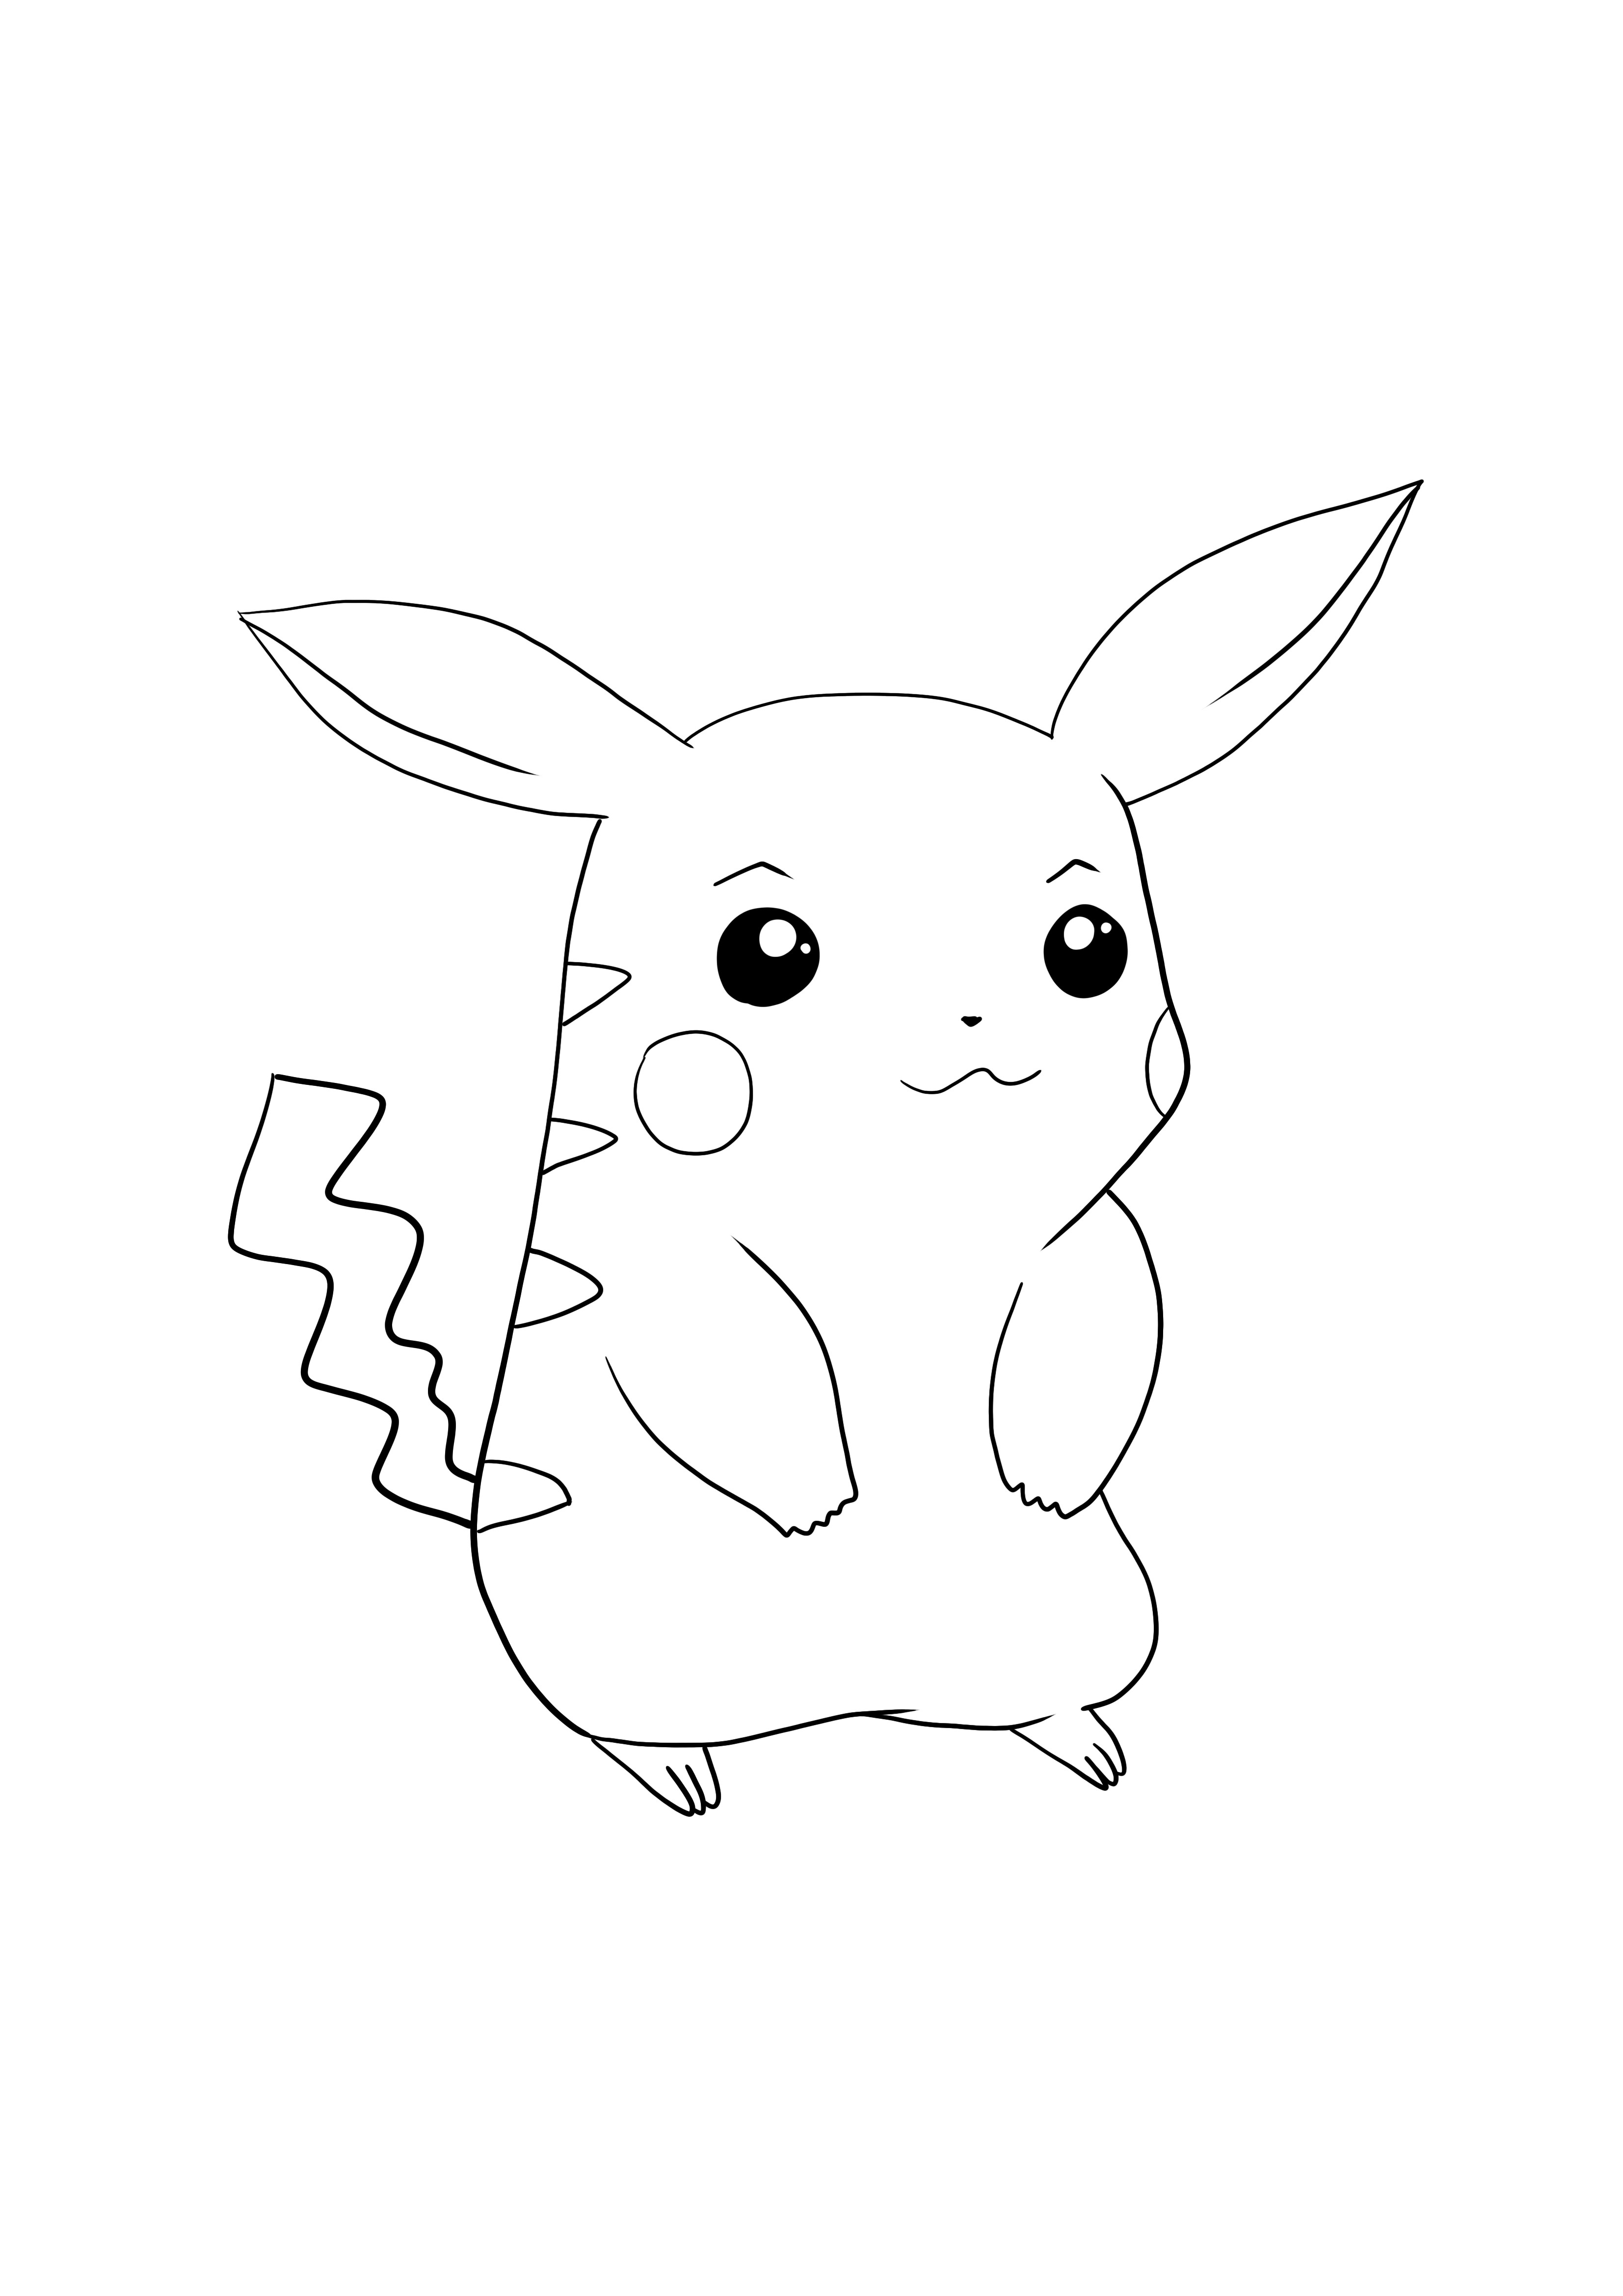 Pikachu-Pokémon go lataa ja väritä ilmainen sivu